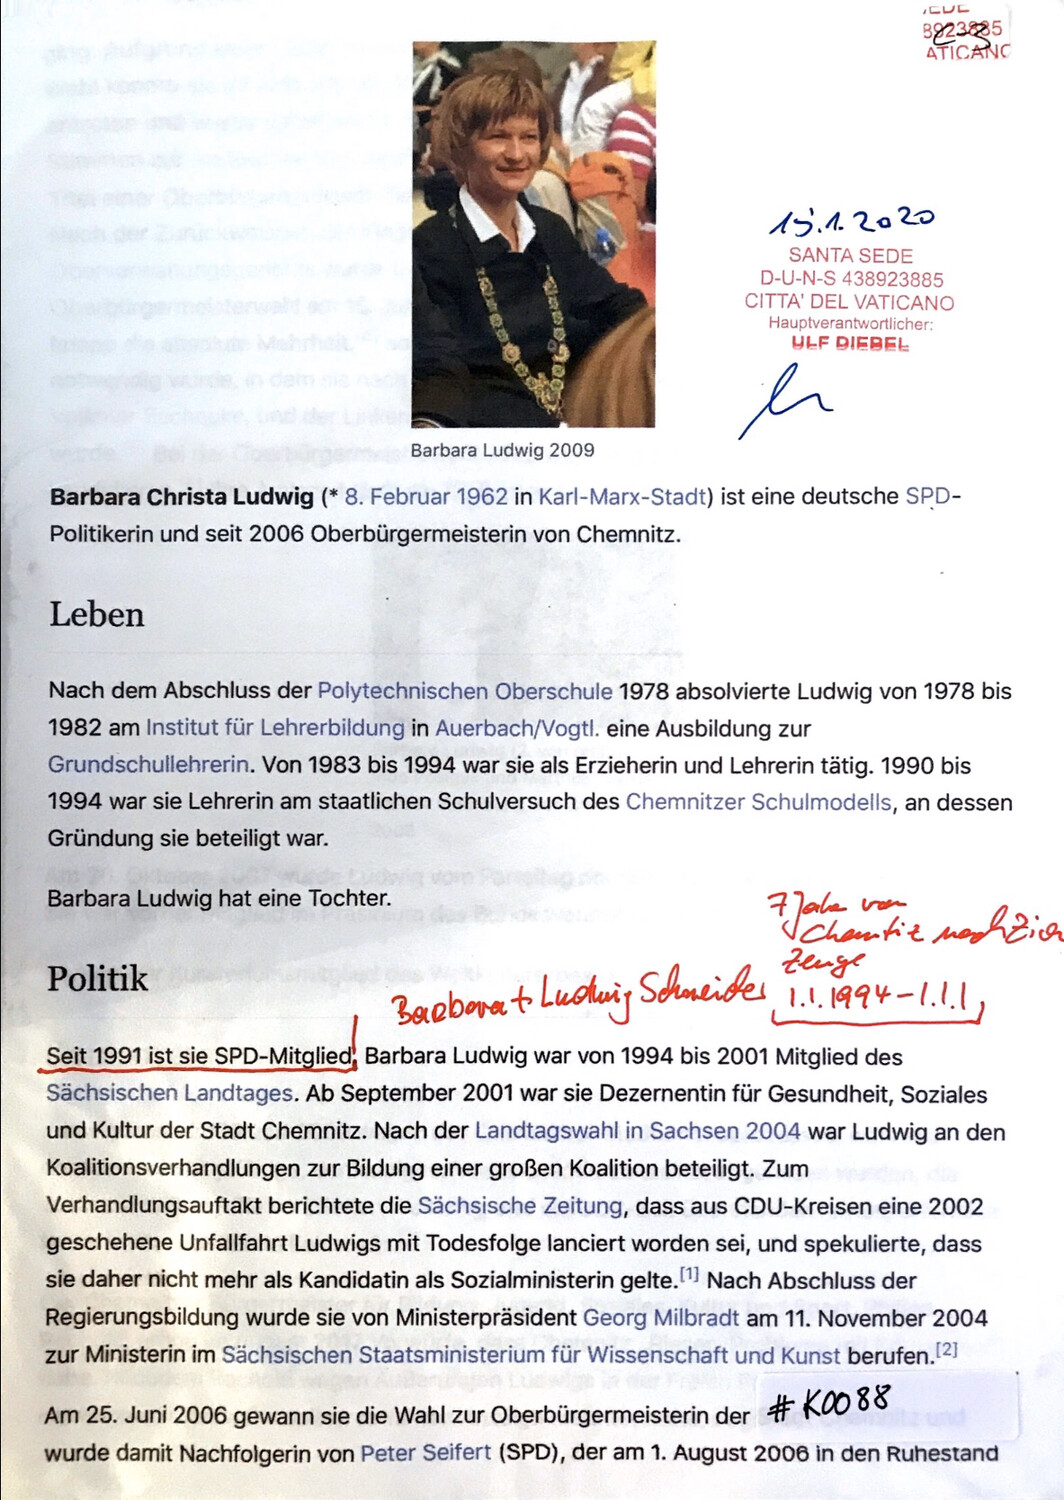 #K088 l Barbara Christa Ludwig - SPD-Politikerin und Oberbürgermeisterin von Chemnitz